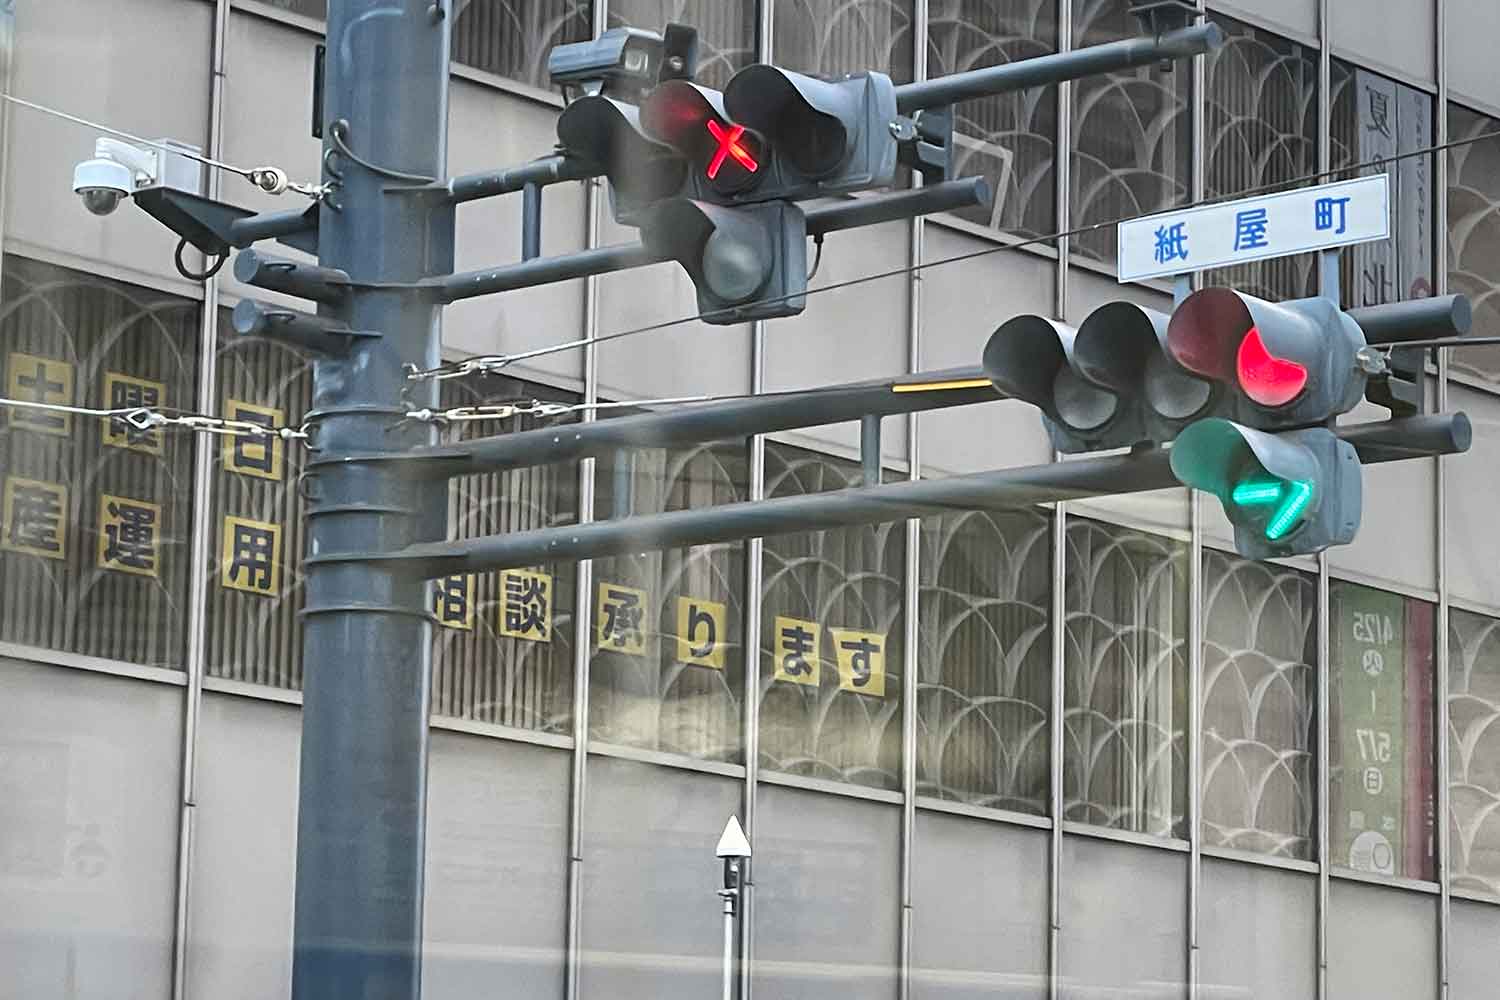 路面電車用の信号機に赤い×が点灯している写真 〜 画像3